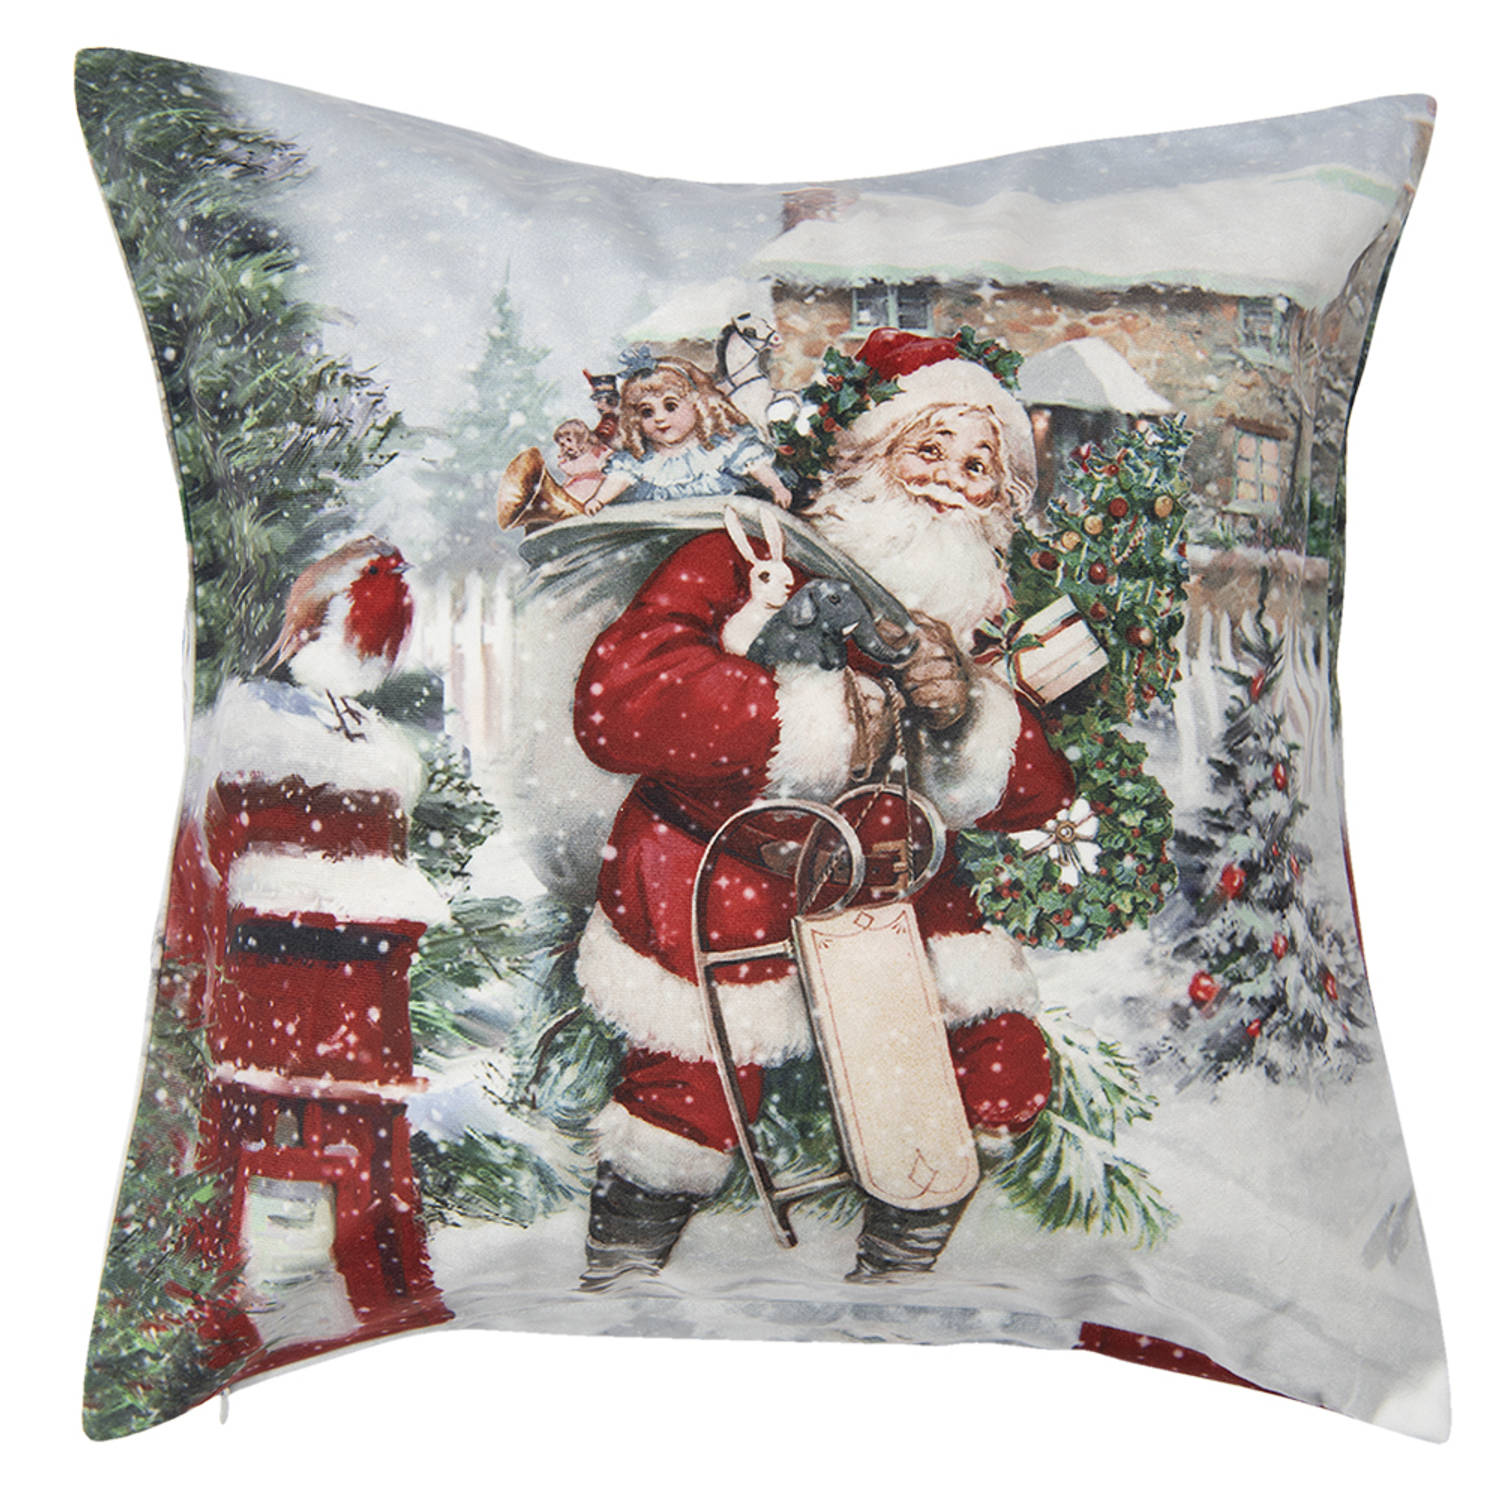 HAES DECO - Kerst Kussenhoes - Formaat 45x45 cm - Collectie: Santa Red - Kleur Wit - Materiaal 100% Polyester - Sierkussen, Kussenhoes, Stoelkussen, Kerstdecoratie, Kerstversiering